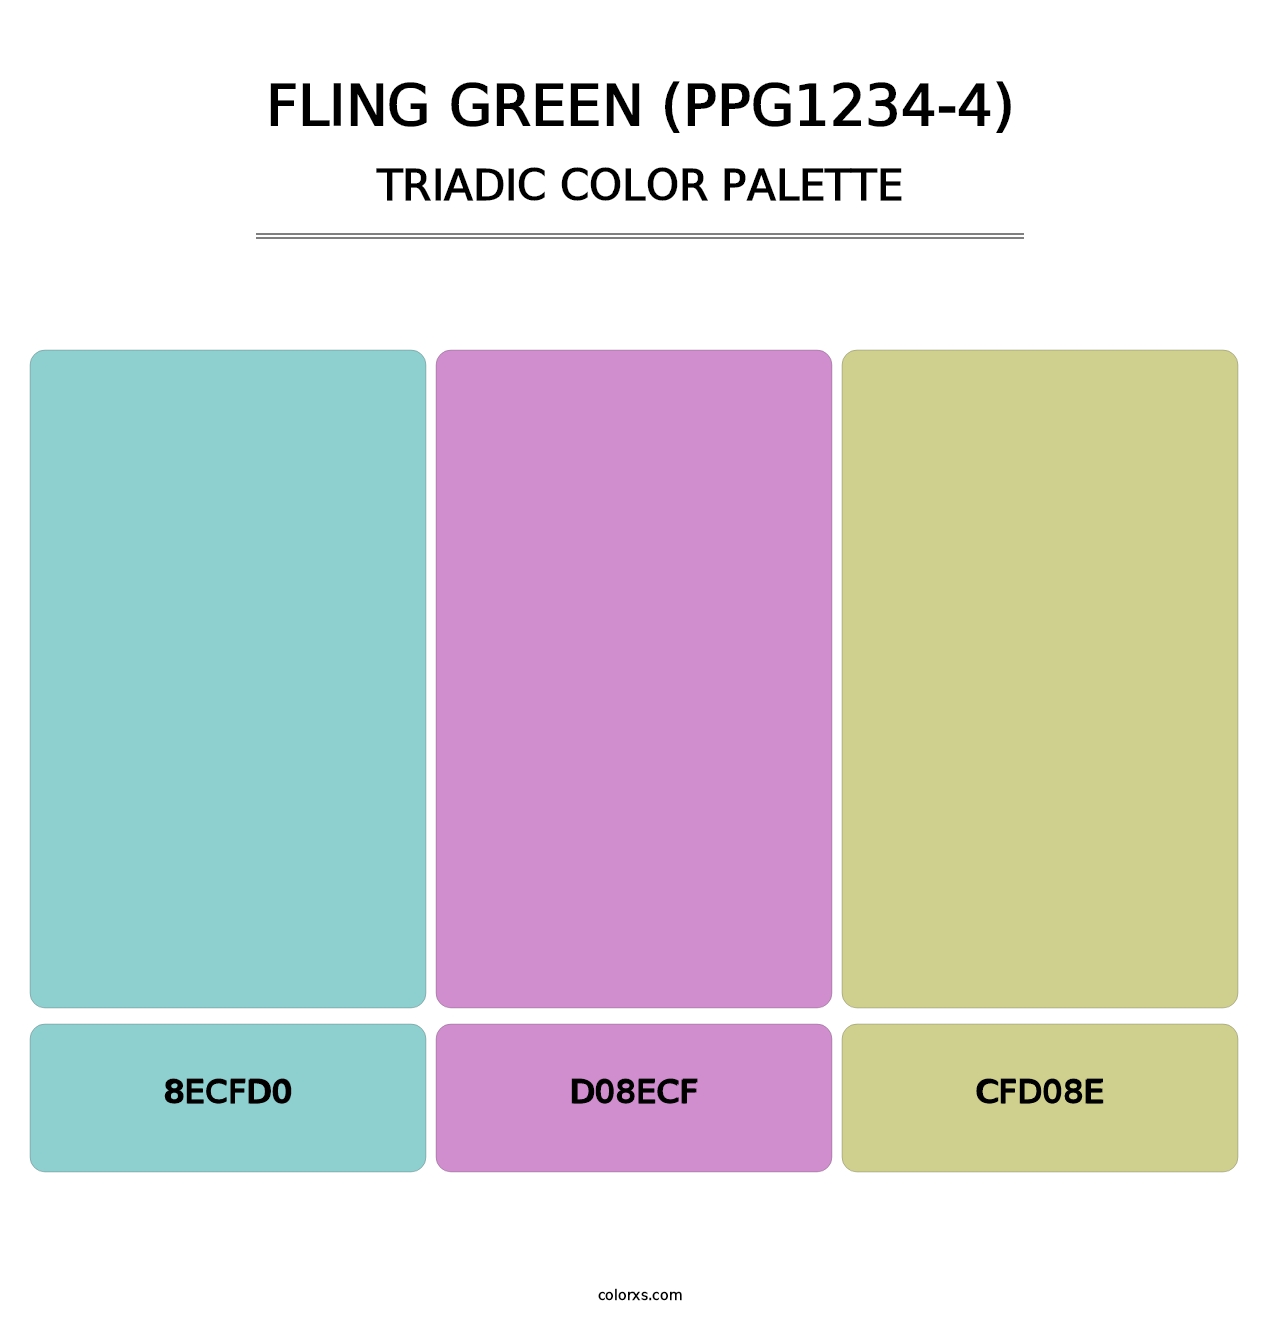 Fling Green (PPG1234-4) - Triadic Color Palette